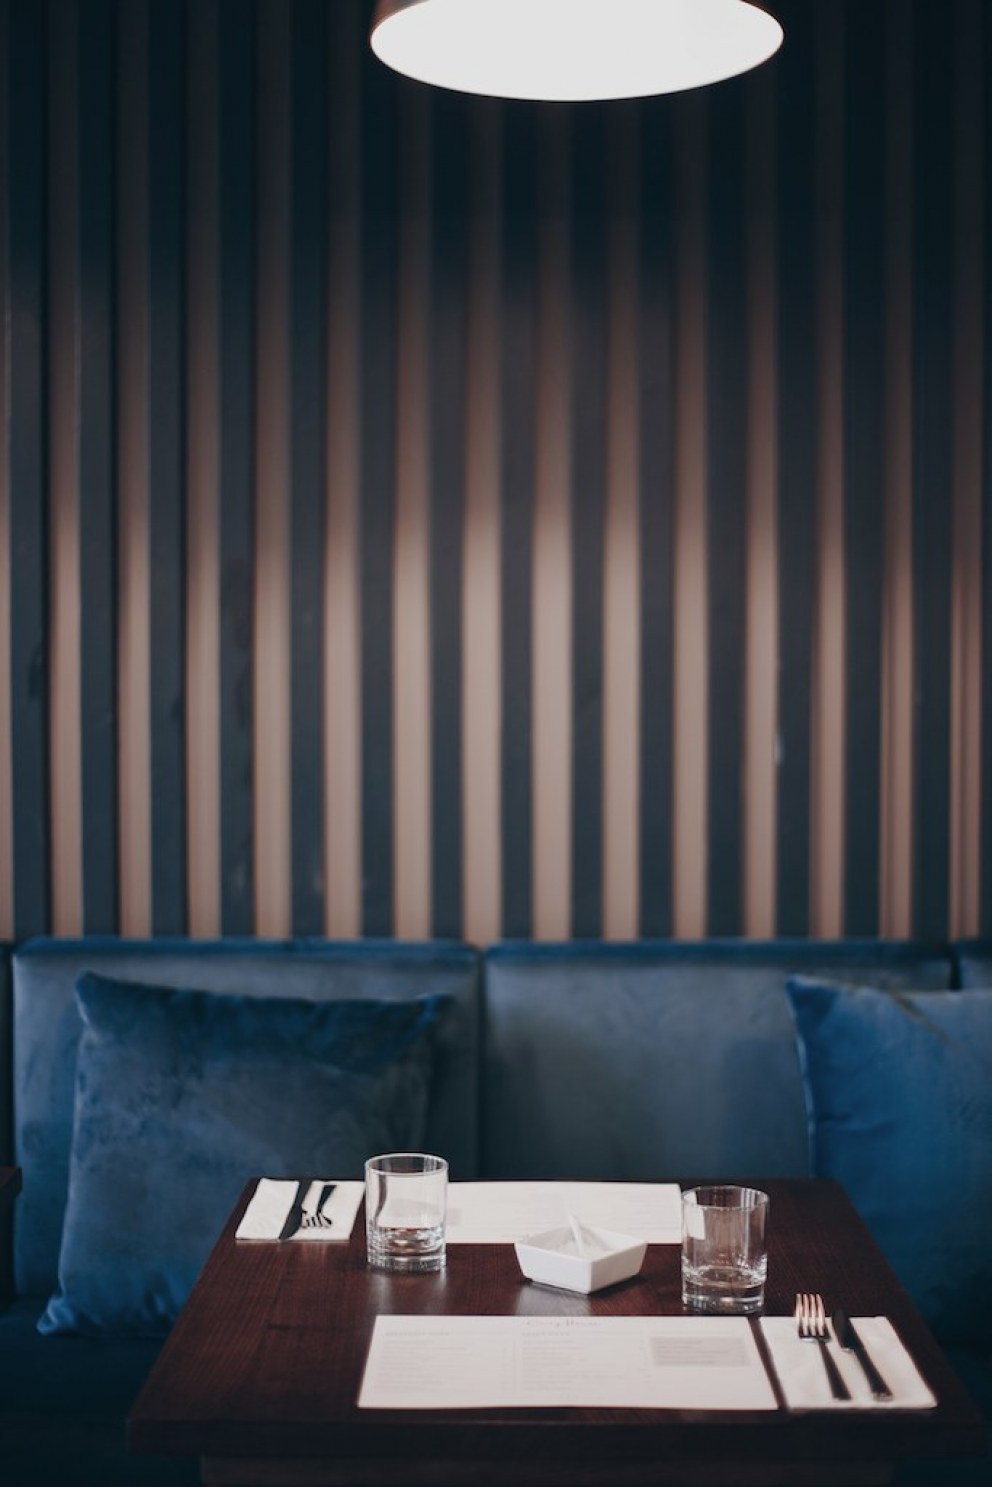 Boutique Hotel Restaurant & Bar | Restaurant & Bar in Skye | Interior Designers